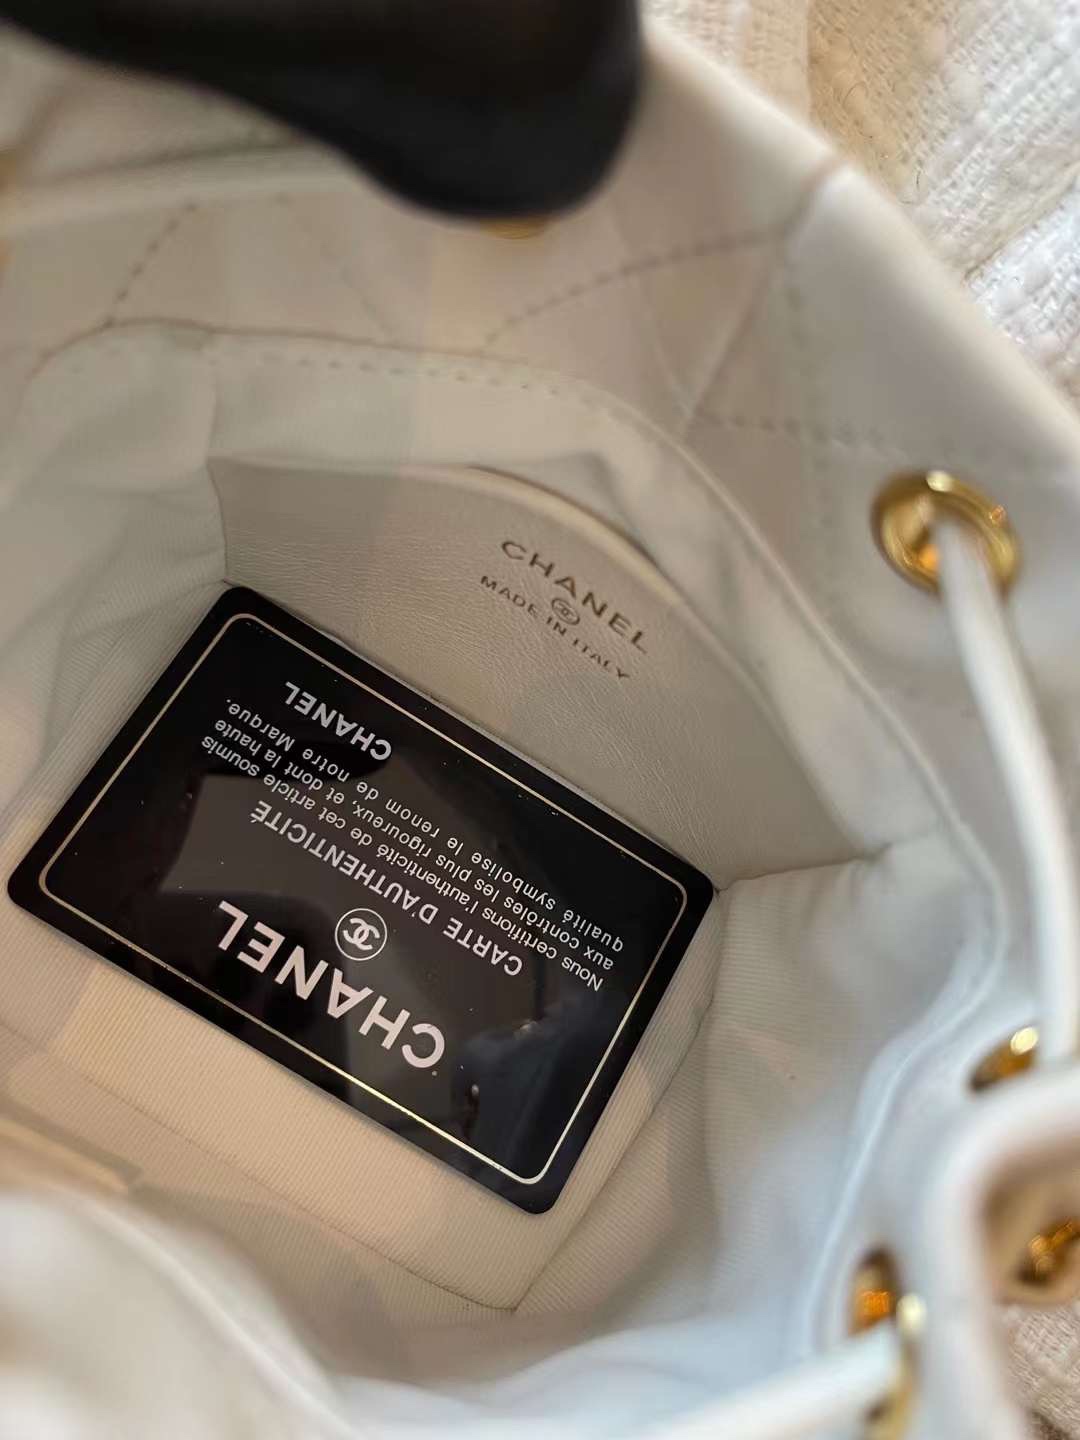 【P1580】Chanel独家款女包 香奈儿底部卡包设计迷你链条水桶包 白色